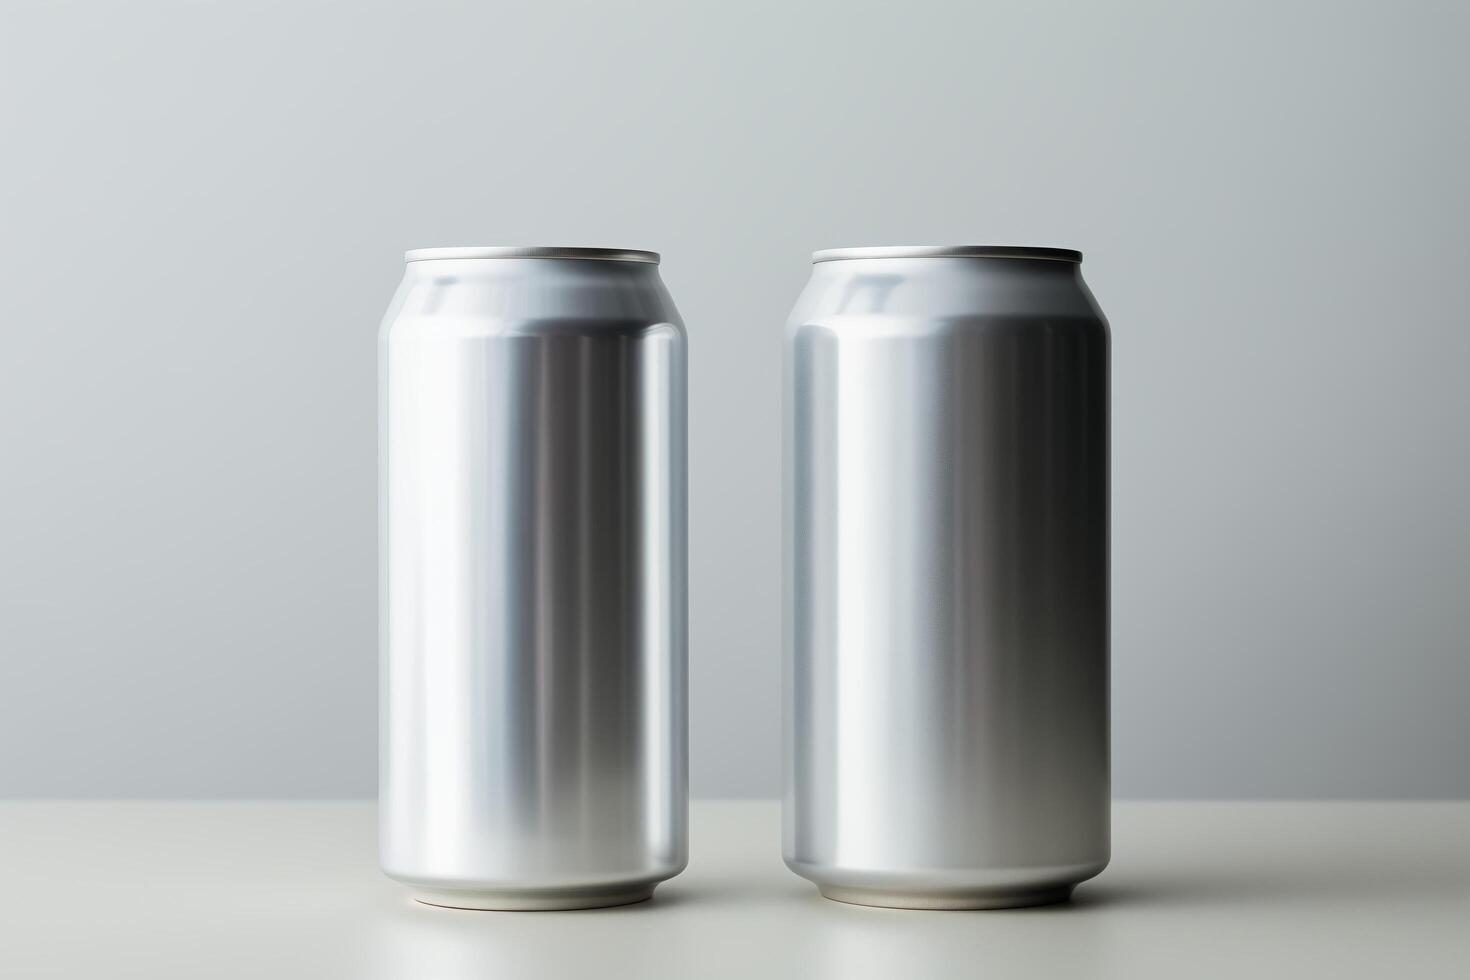 deux aluminium un soda canettes doublé en haut suivant à chaque autre sur une plat surface. photo